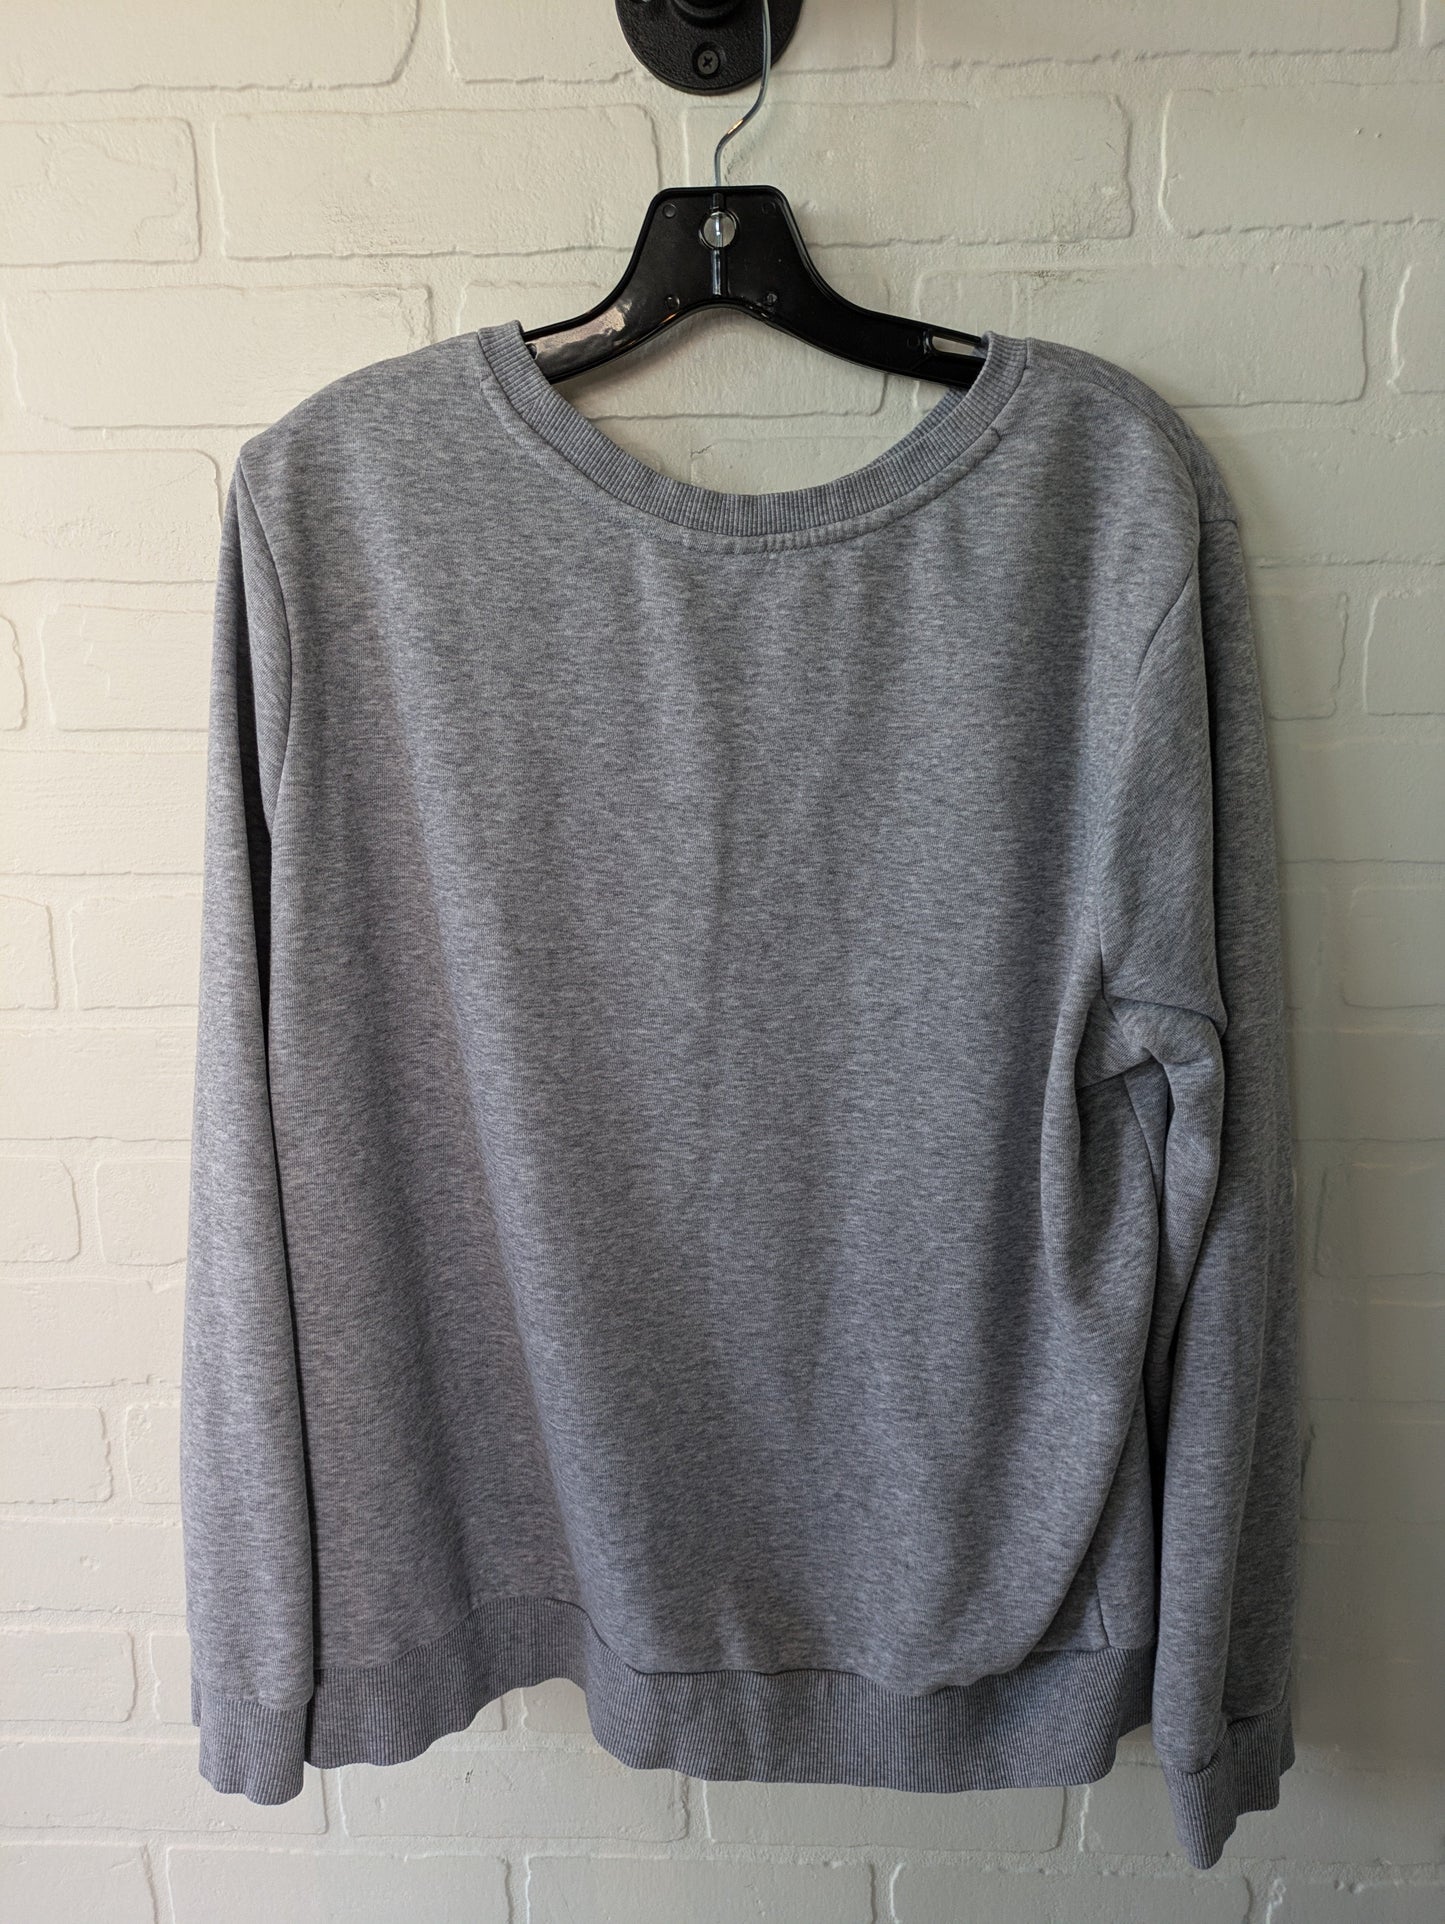 Grey Athletic Sweatshirt Crewneck Adidas, Size Xl